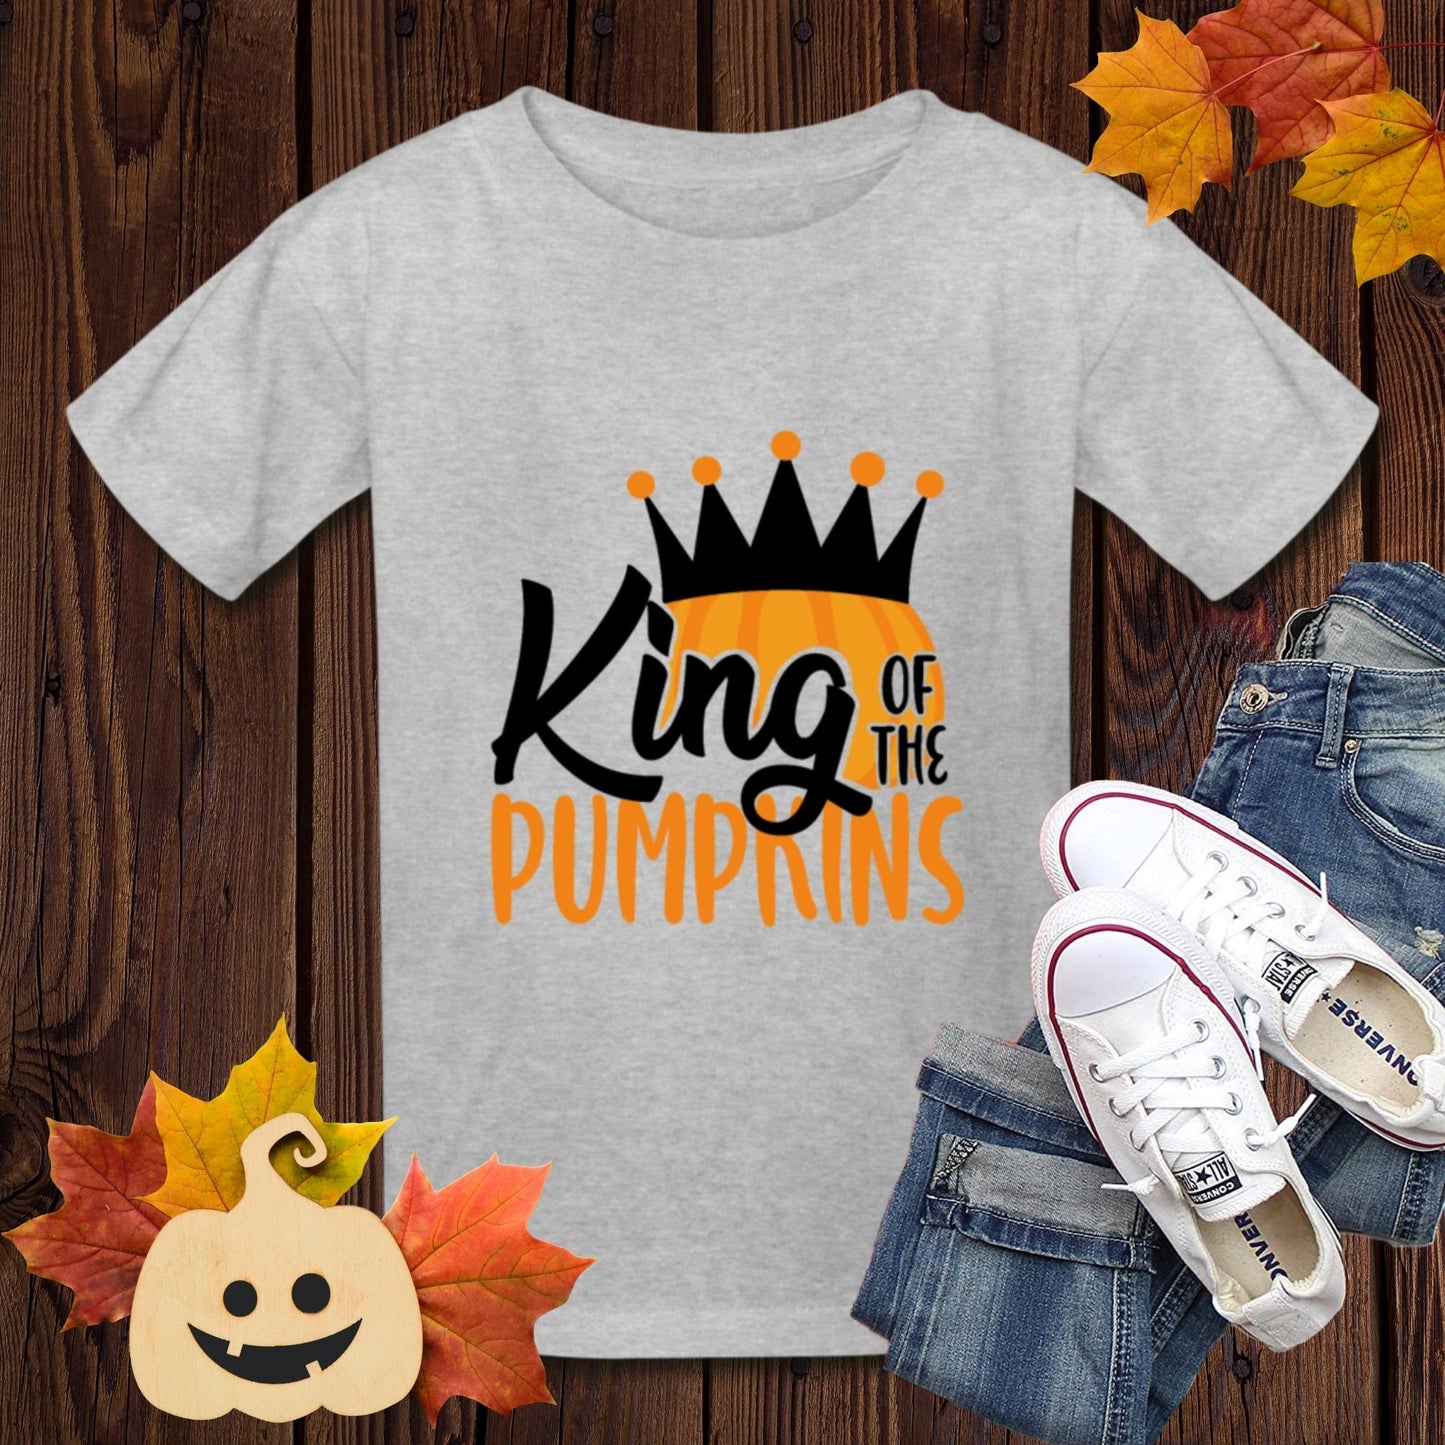 Boys Halloween T-shirt, Funny Pumpkin Fall Shirt Kids